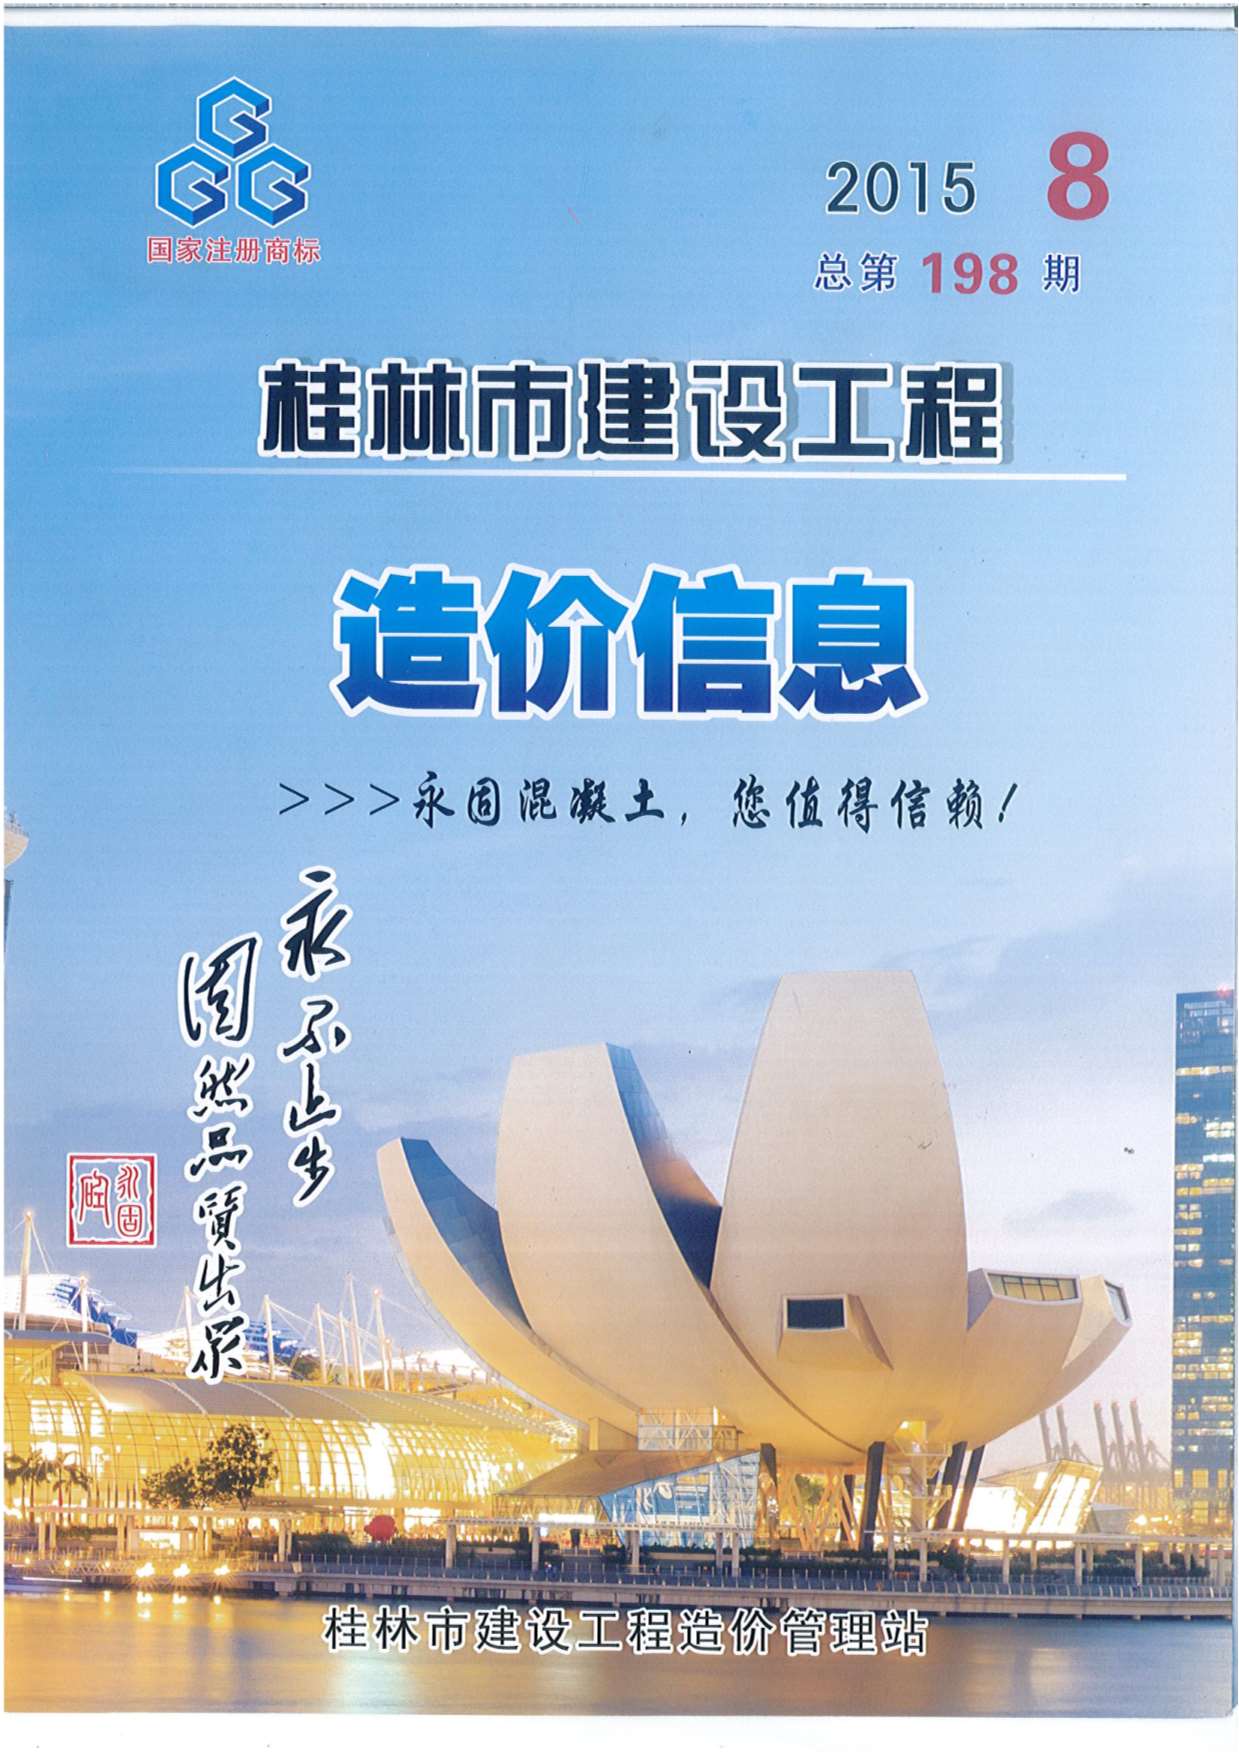 桂林市2015年8月建设工程造价信息